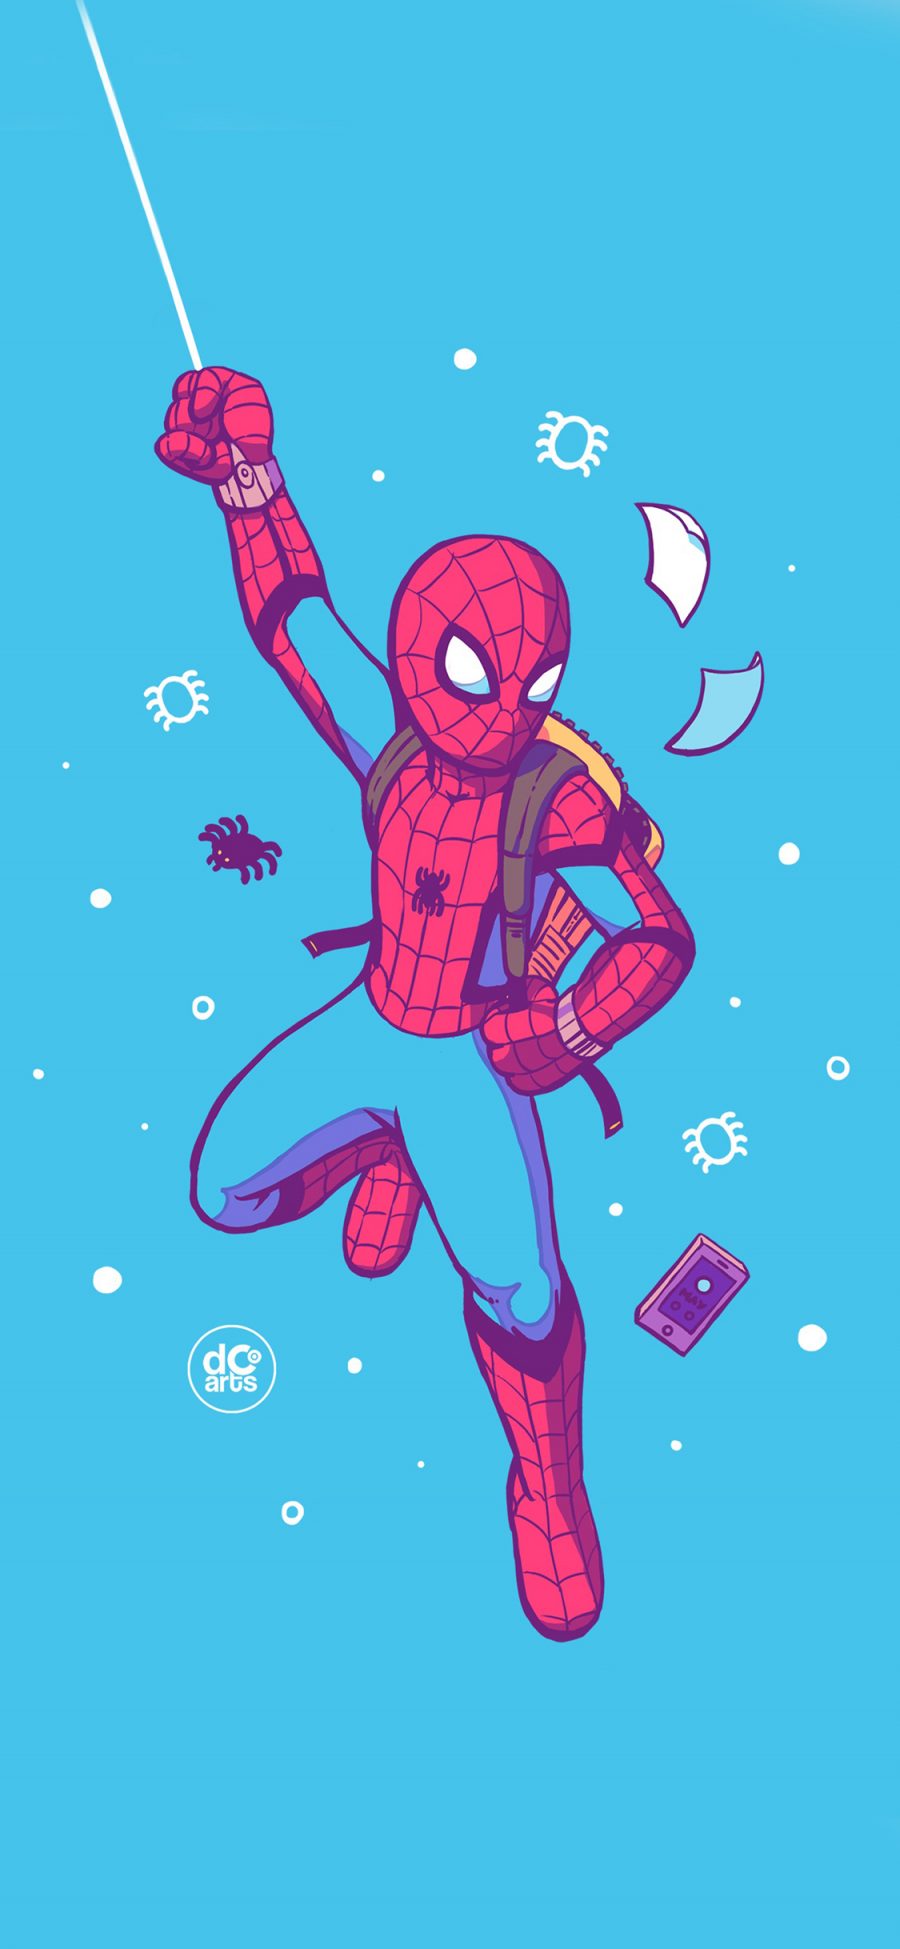 [2436×1125]漫威 英雄 蜘蛛侠 Q版 苹果手机动漫壁纸图片